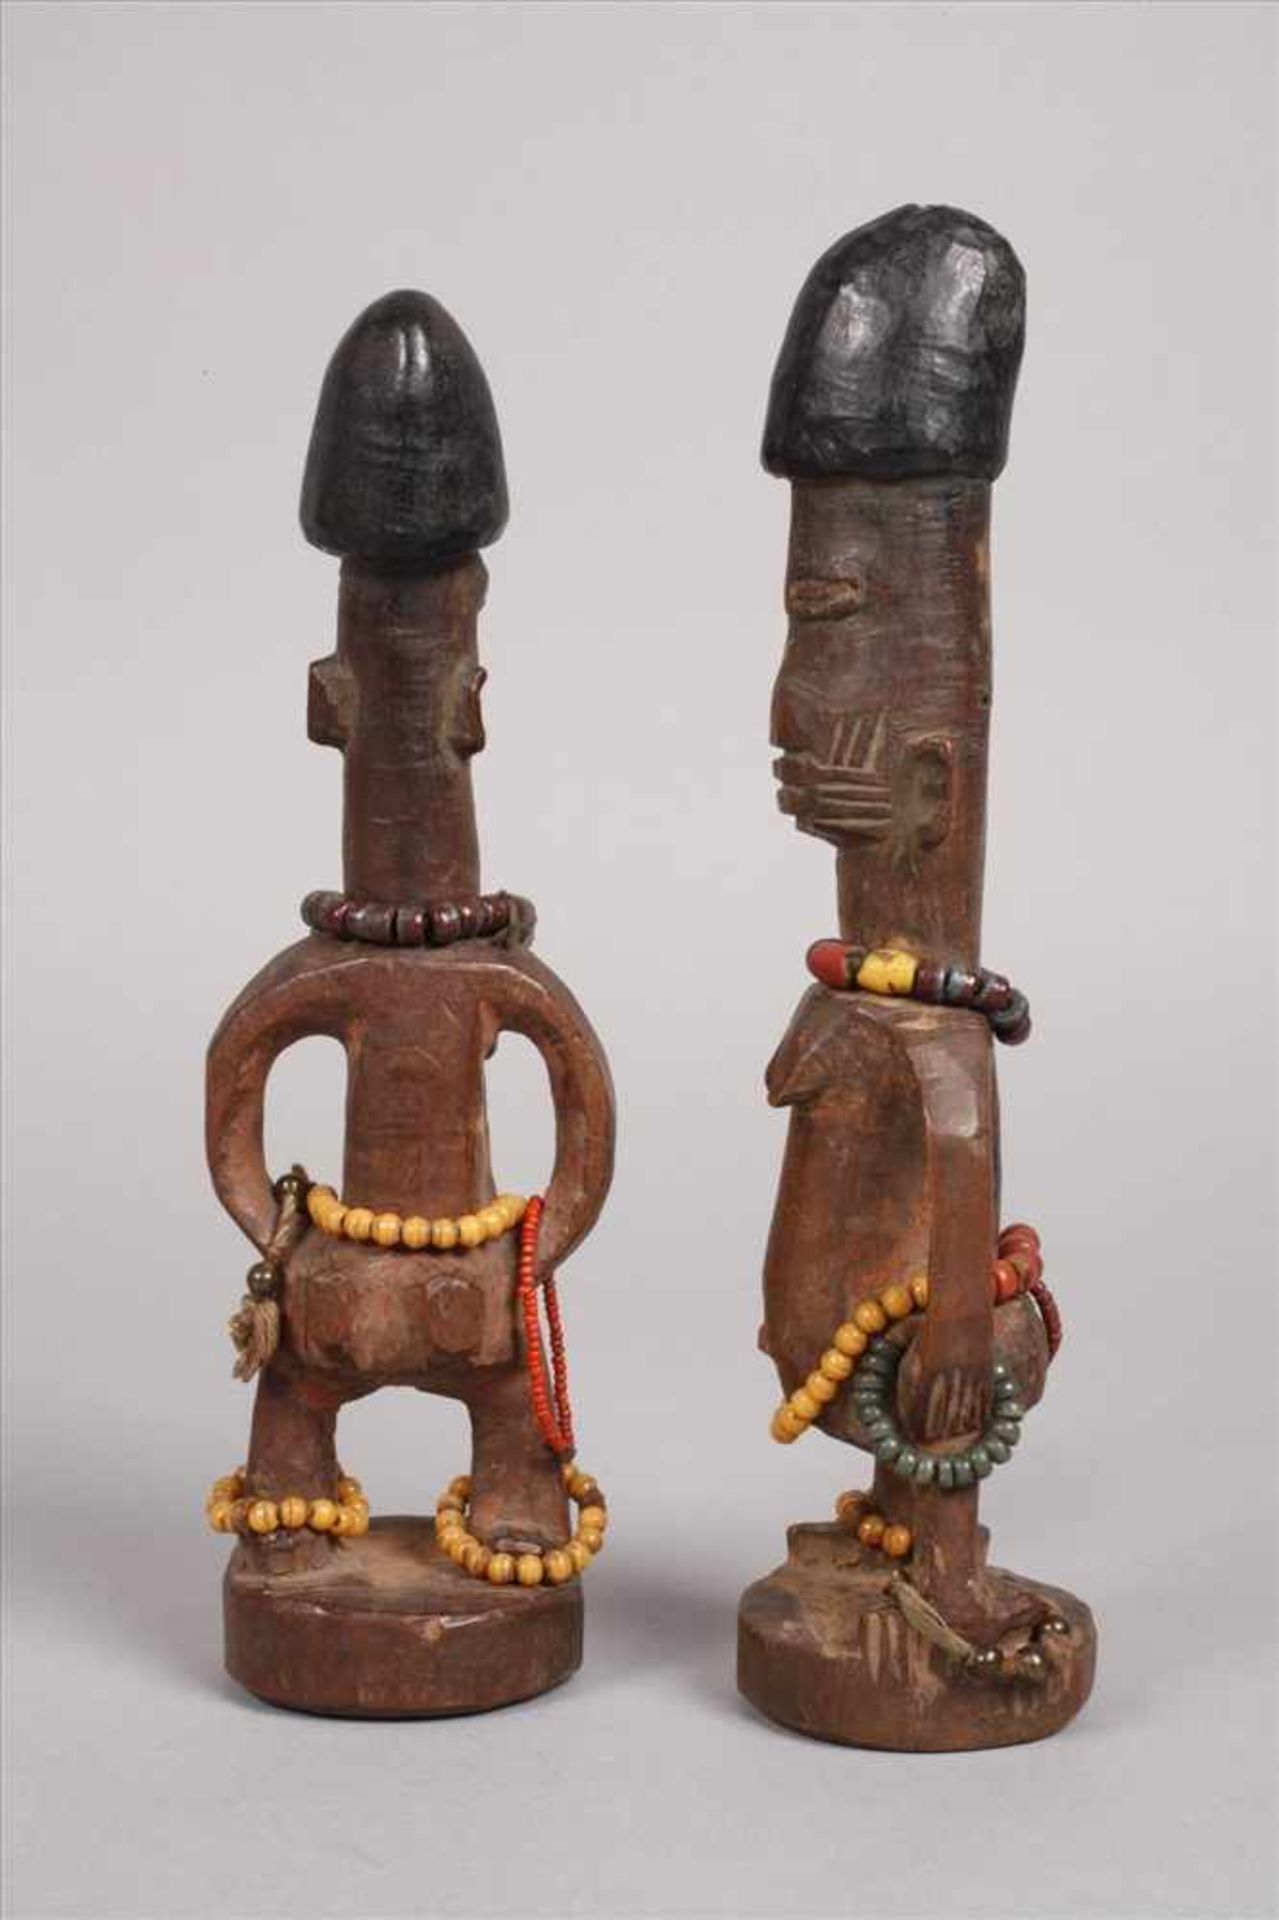 Drei KleinplastikenNigeria, der Volksgruppe der Yoruba zugeordnet, hartes, braunes Tropenholz, - Bild 2 aus 3